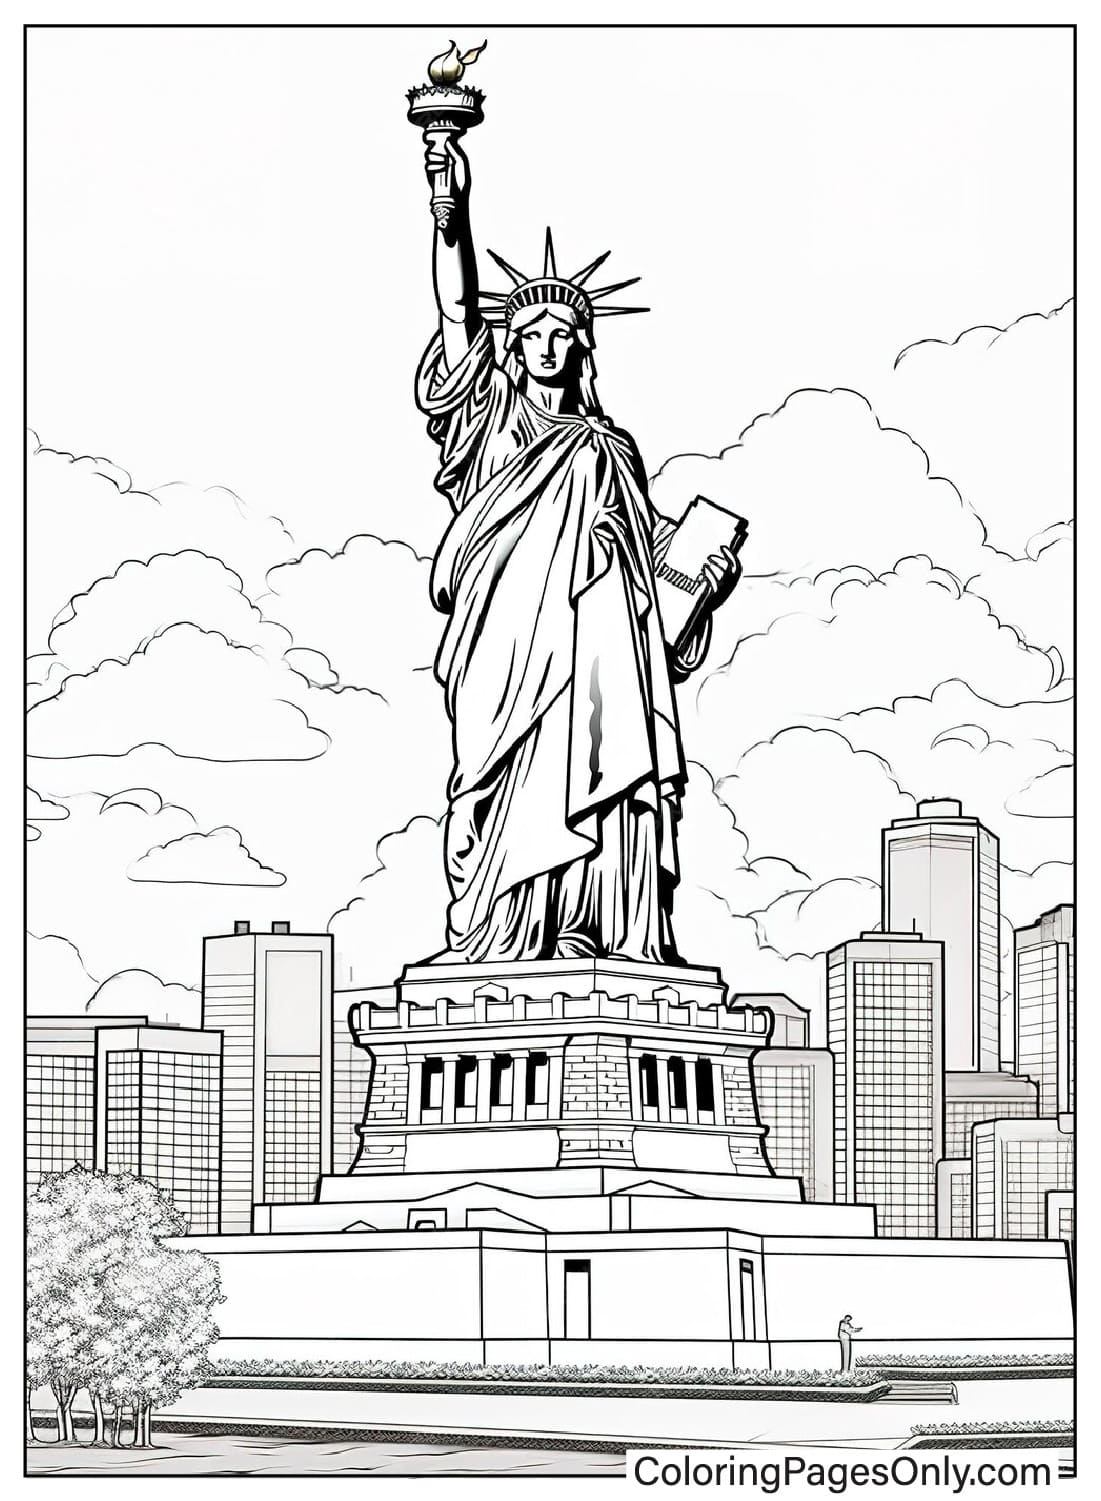 Página Para Colorear Realista De La Estatua De La Libertad